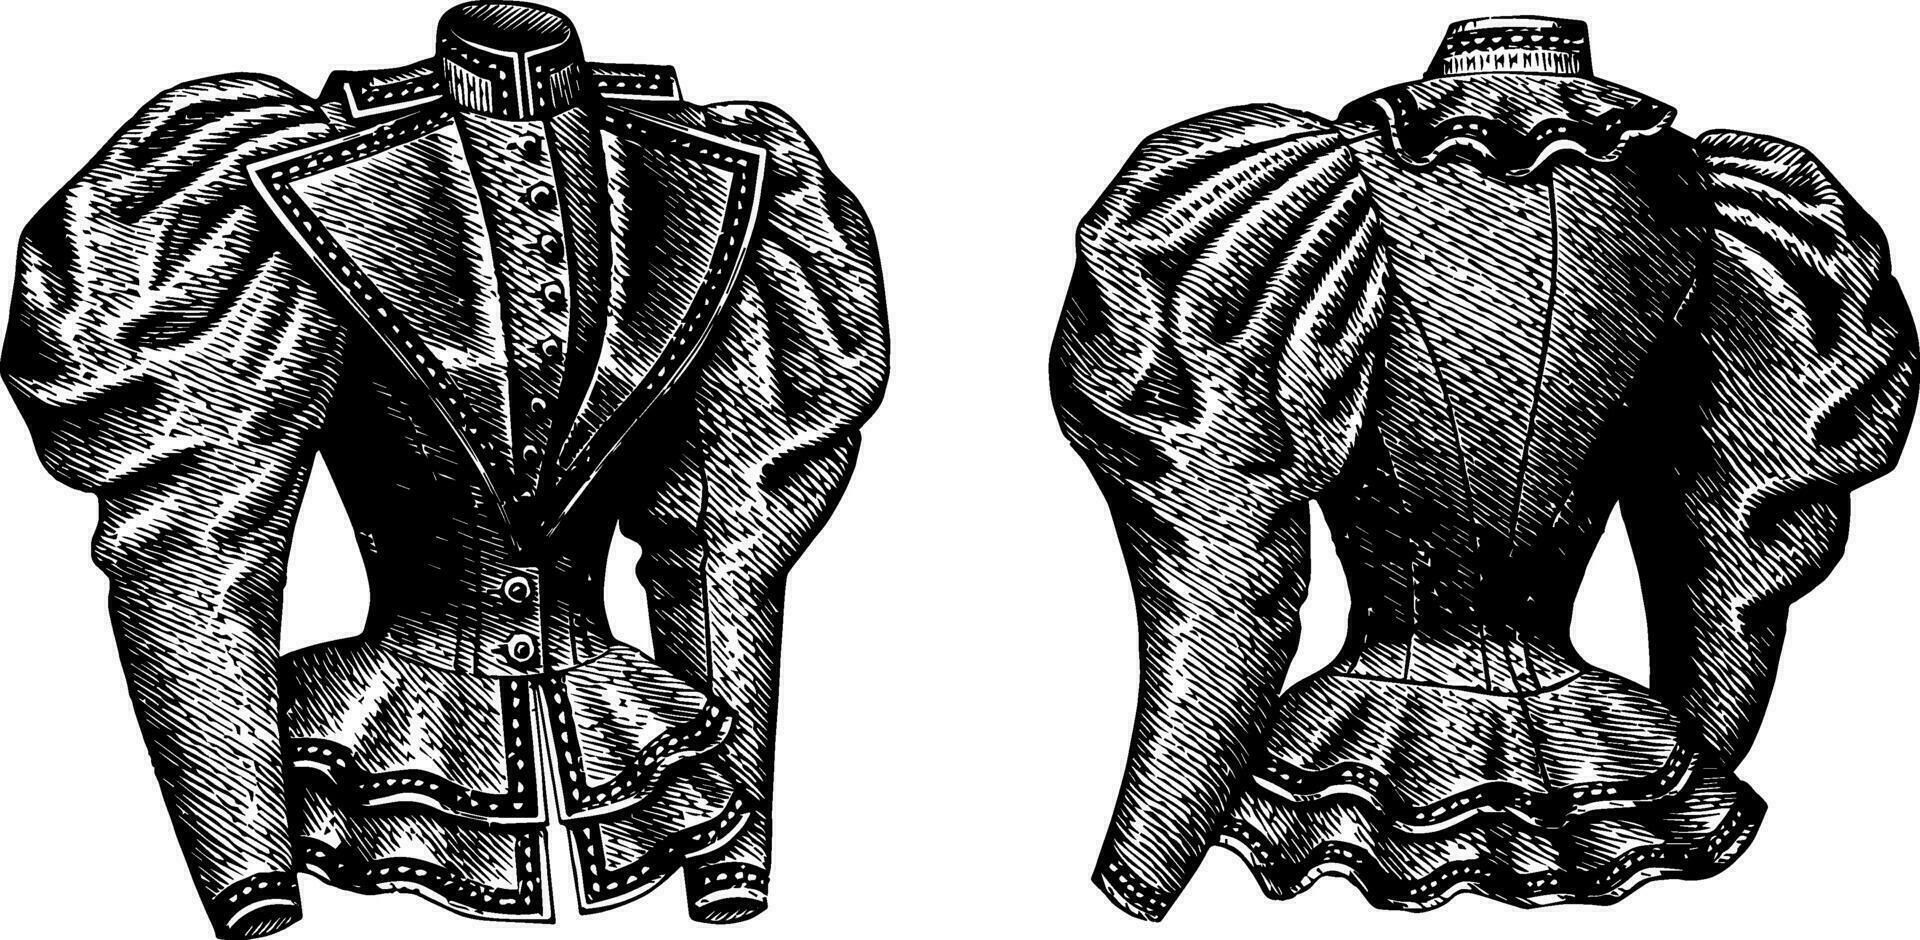 equipado chaqueta, hinchado mangas, Clásico grabado. vector